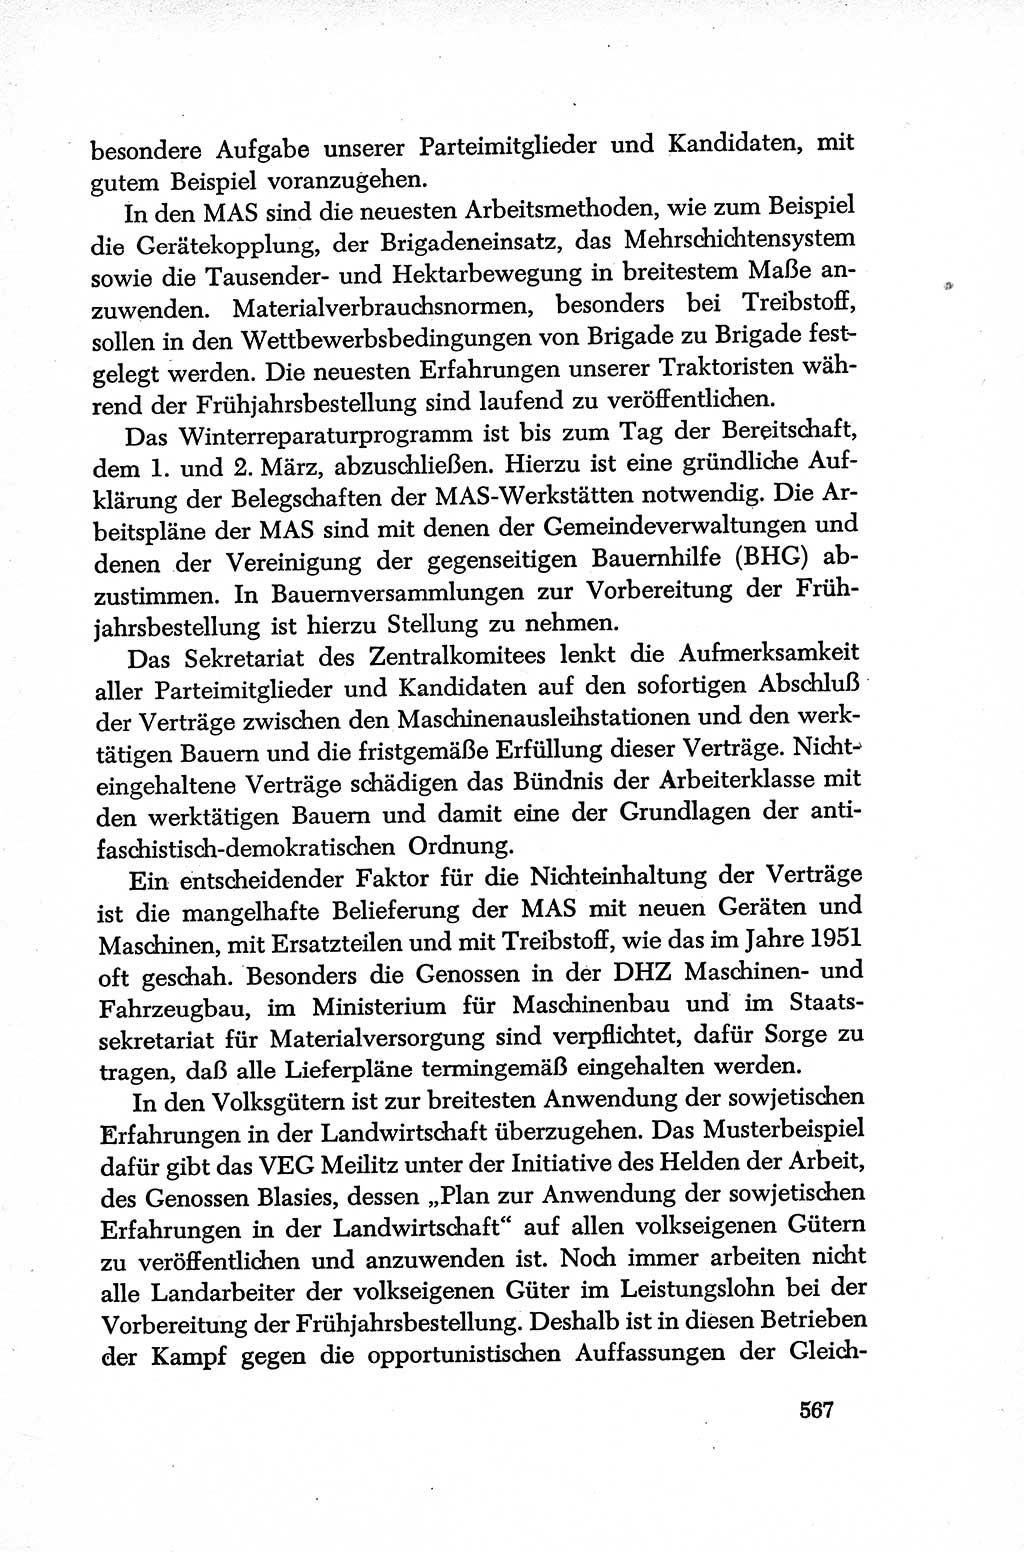 Dokumente der Sozialistischen Einheitspartei Deutschlands (SED) [Deutsche Demokratische Republik (DDR)] 1952-1953, Seite 567 (Dok. SED DDR 1952-1953, S. 567)